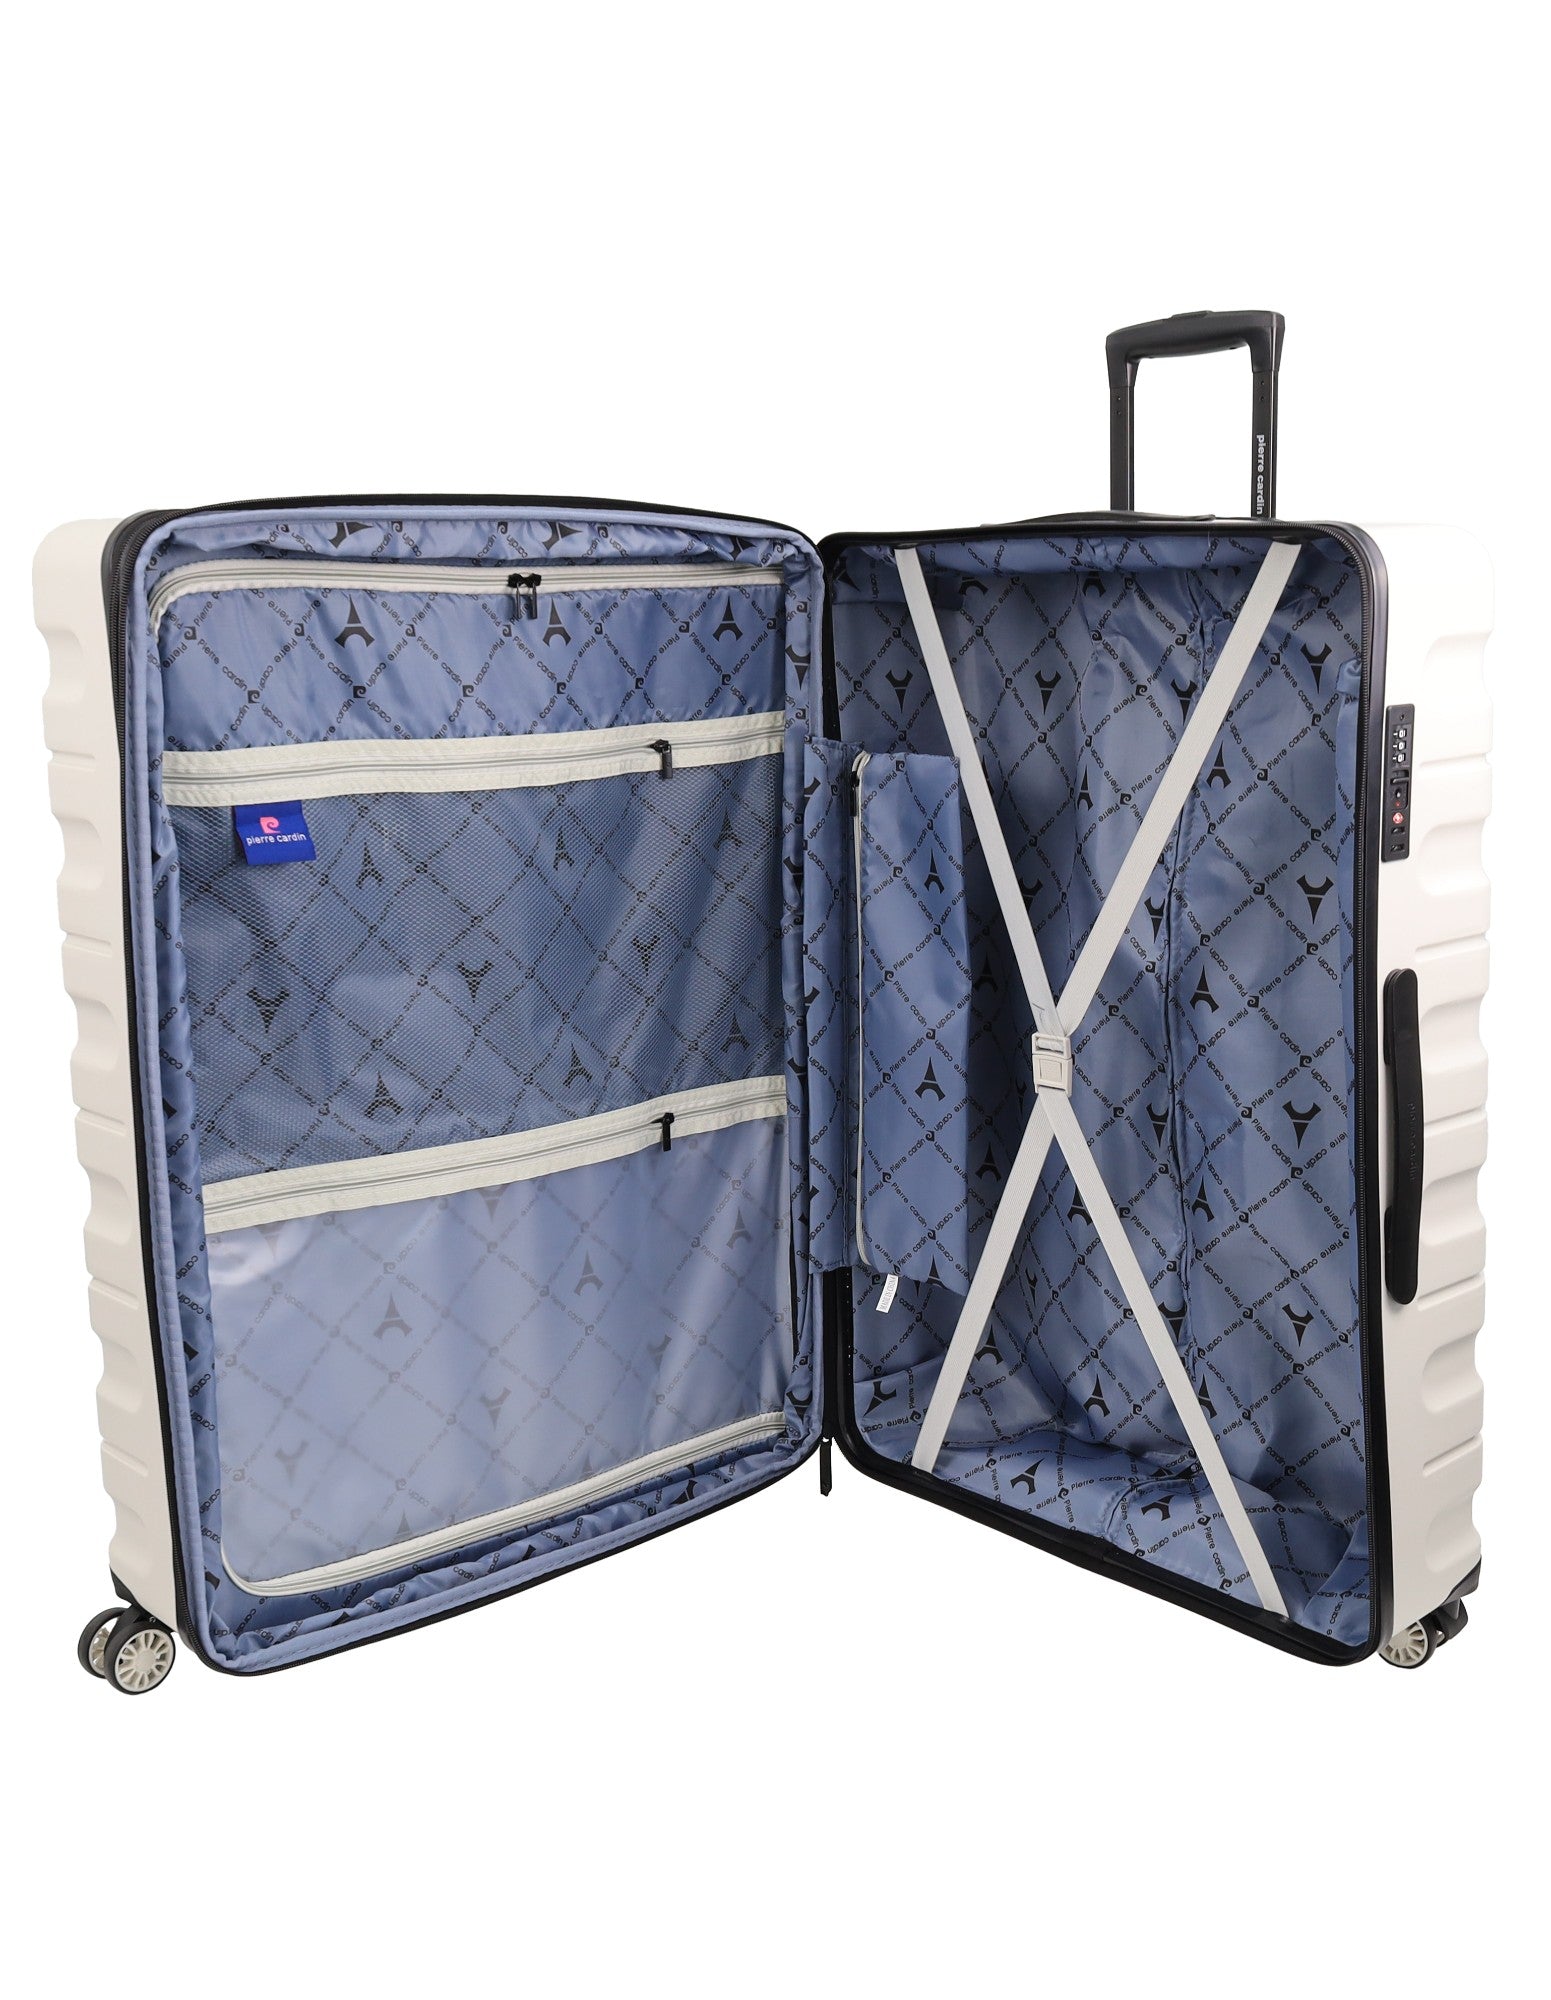 Pierre Cardin Hard-shell 3-Piece Luggage Set in Moss